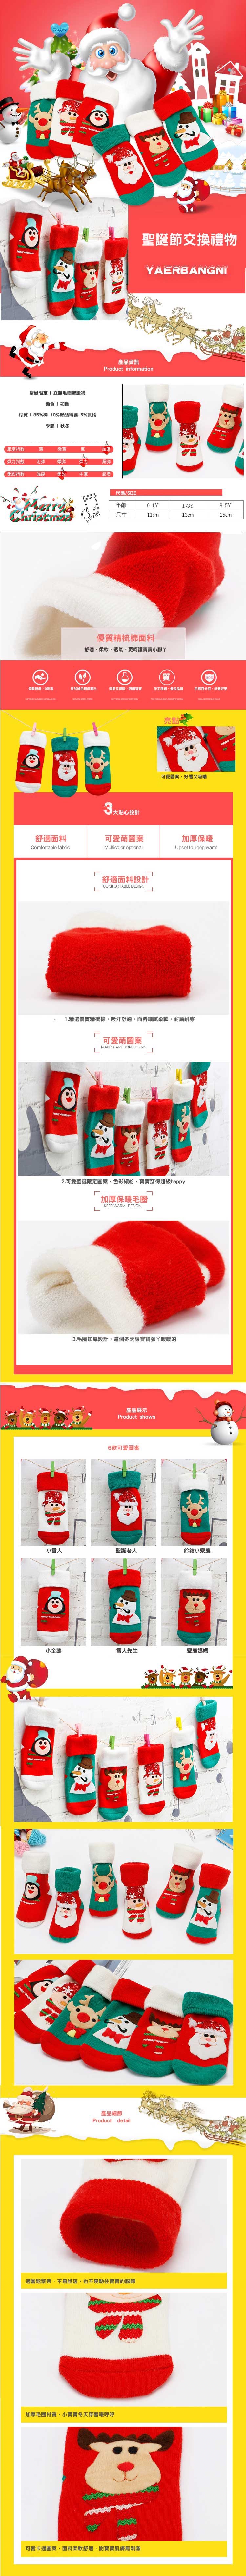 拼布立體聖誕襪【JB0065】韓國寶寶秋冬保暖毛圈襪 聖誕立體植絨襪 卡通公仔襪 毛襪 聖誕禮物(1-3Y)